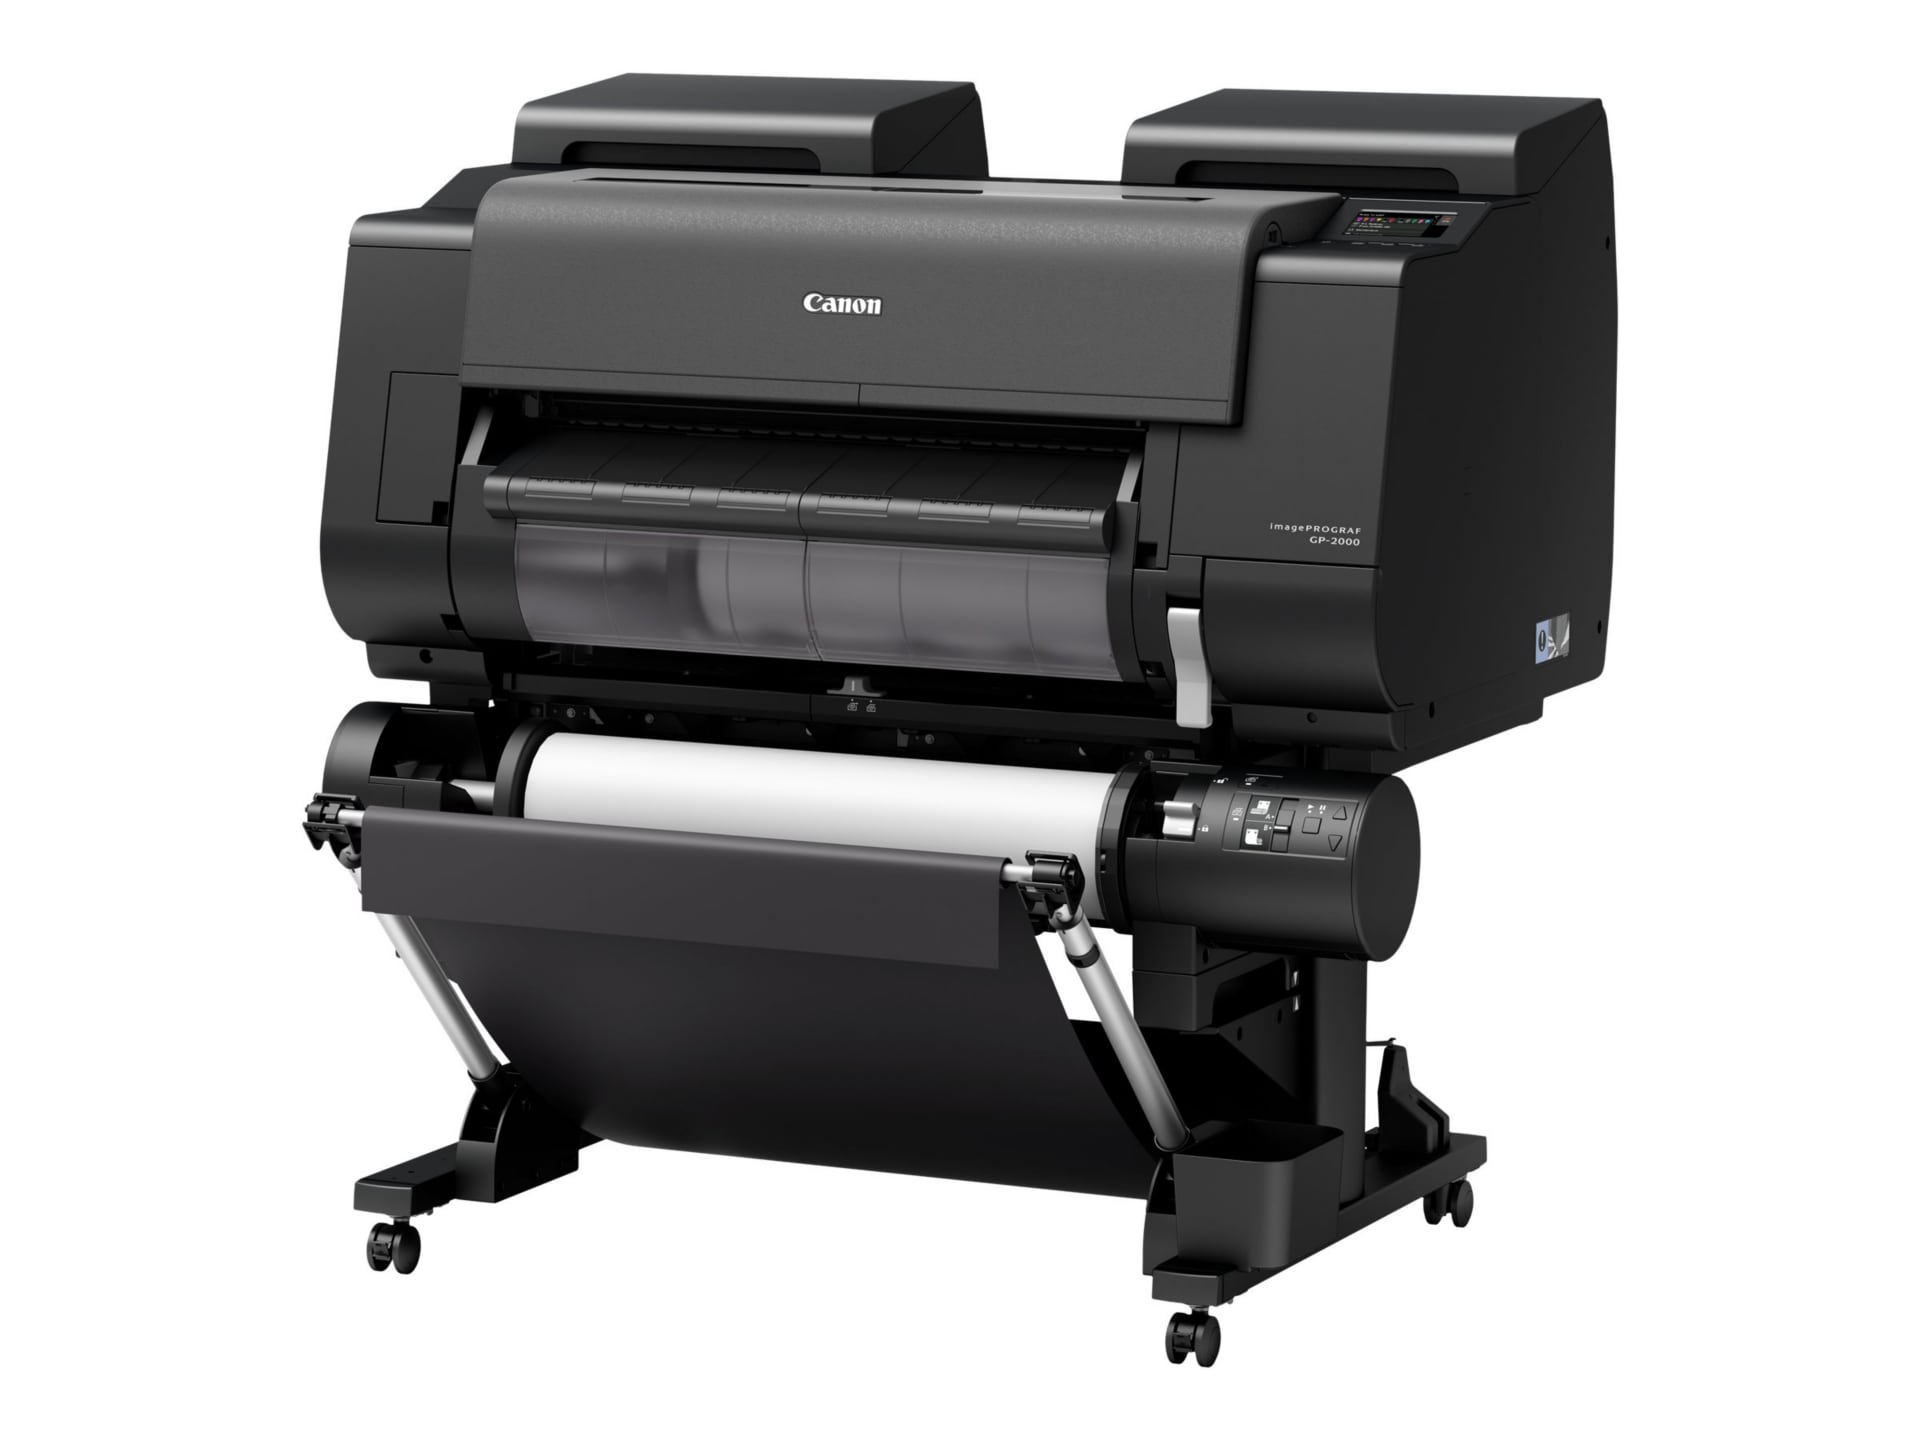 Canon imagePROGRAF GP-2000 - large-format printer - color - ink-jet